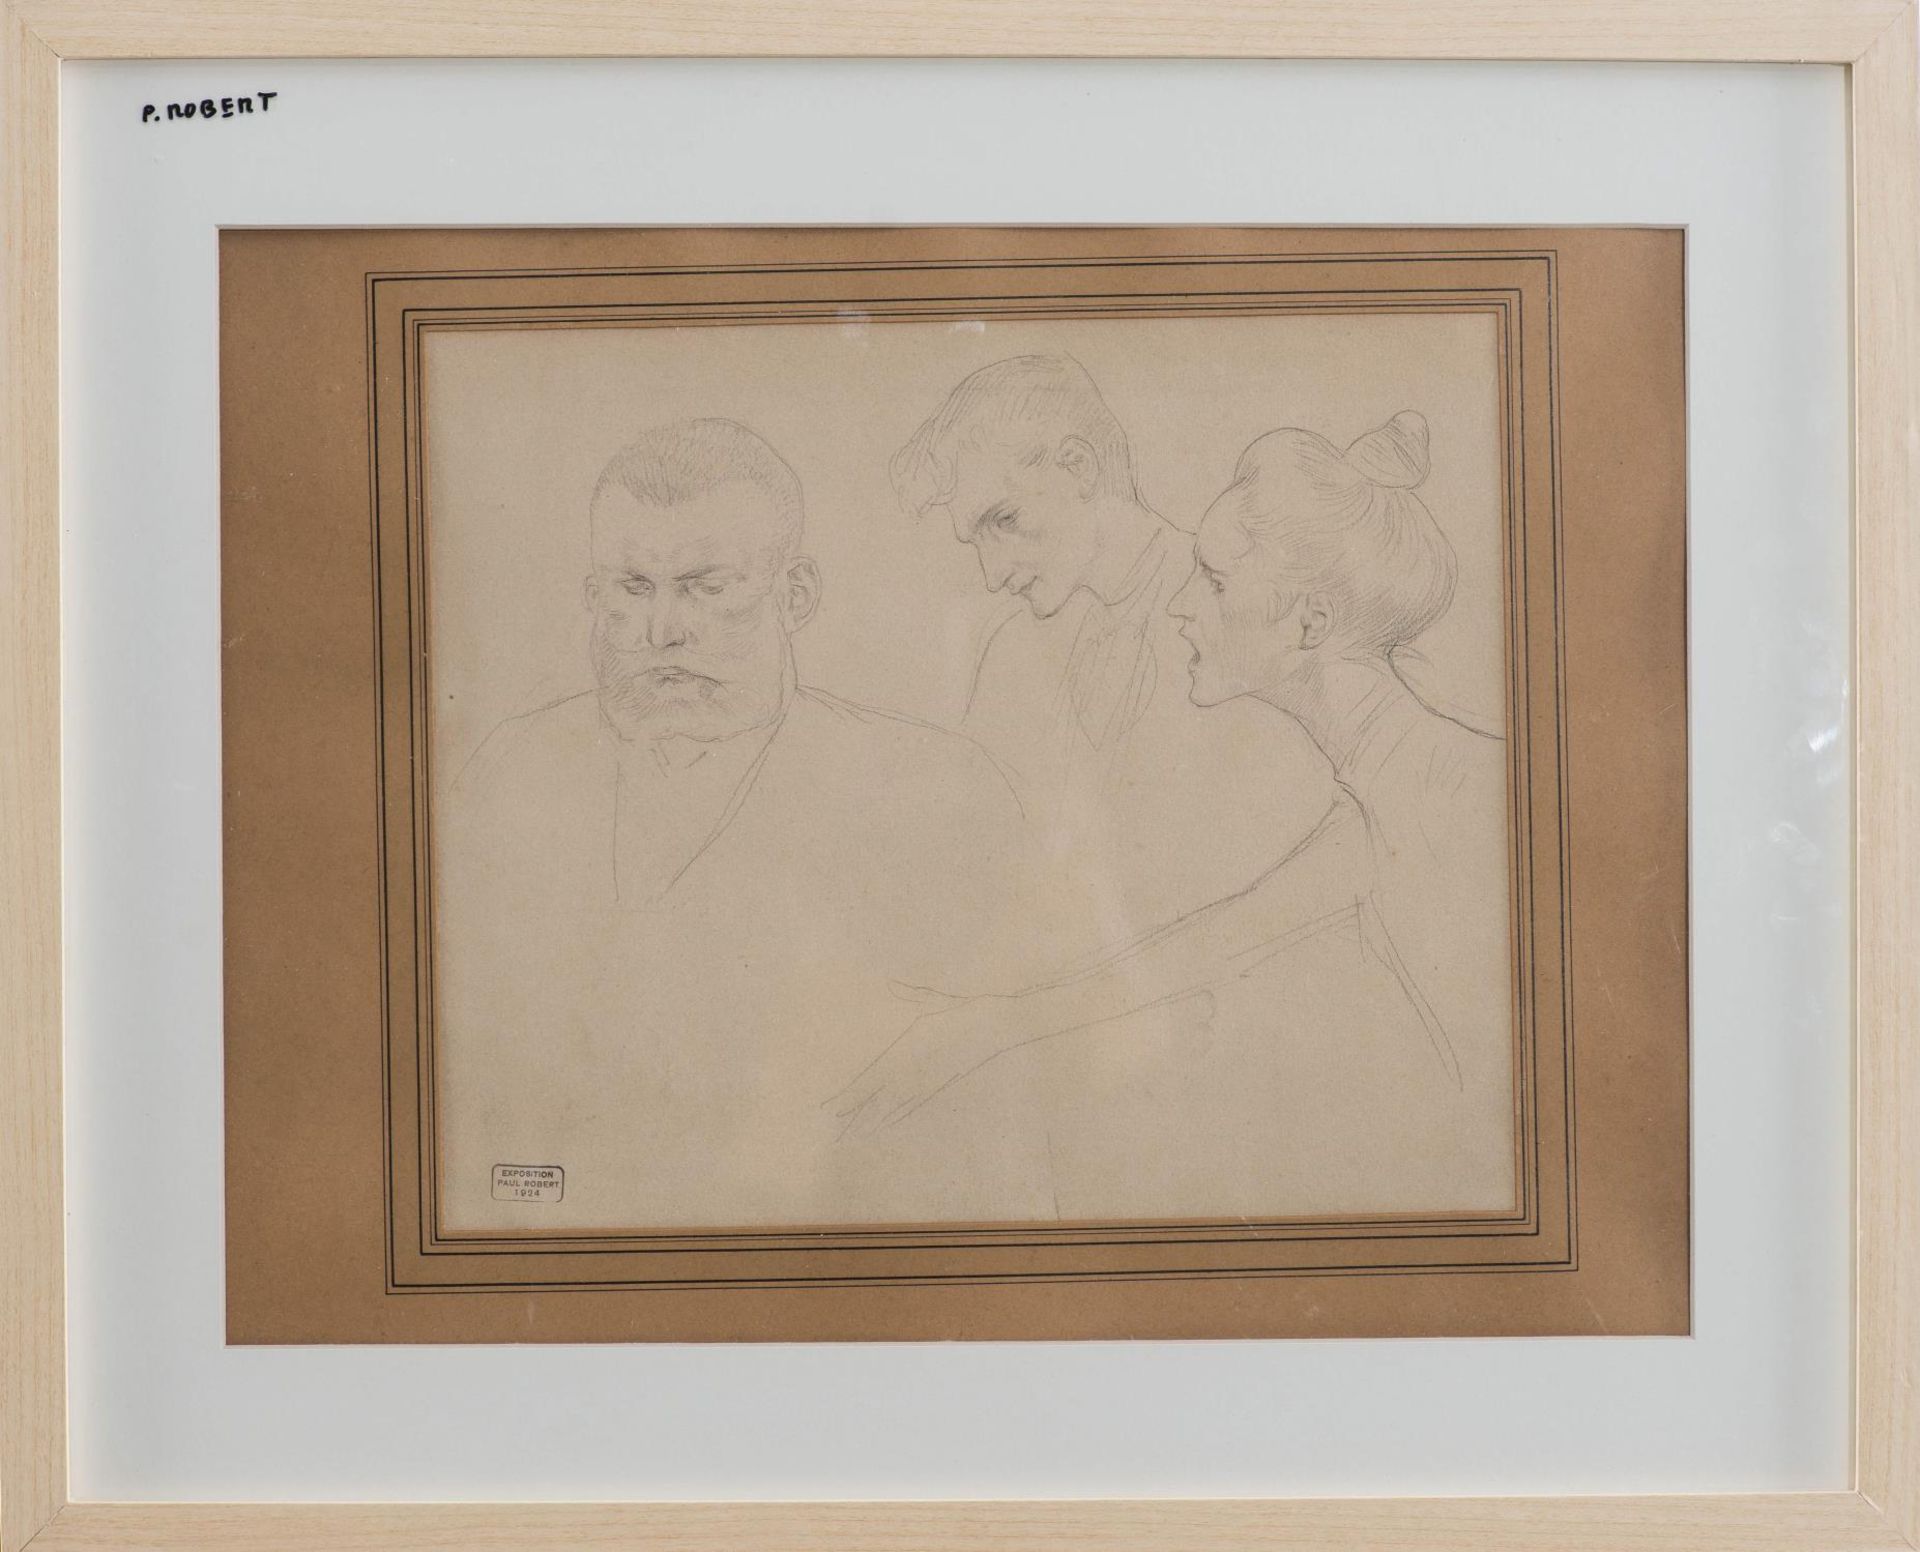 Léo Paul Samuel ROBERT (1851-1923), "Trois portraits" - Léo Paul Samuel ROBERT [...] - Bild 2 aus 5